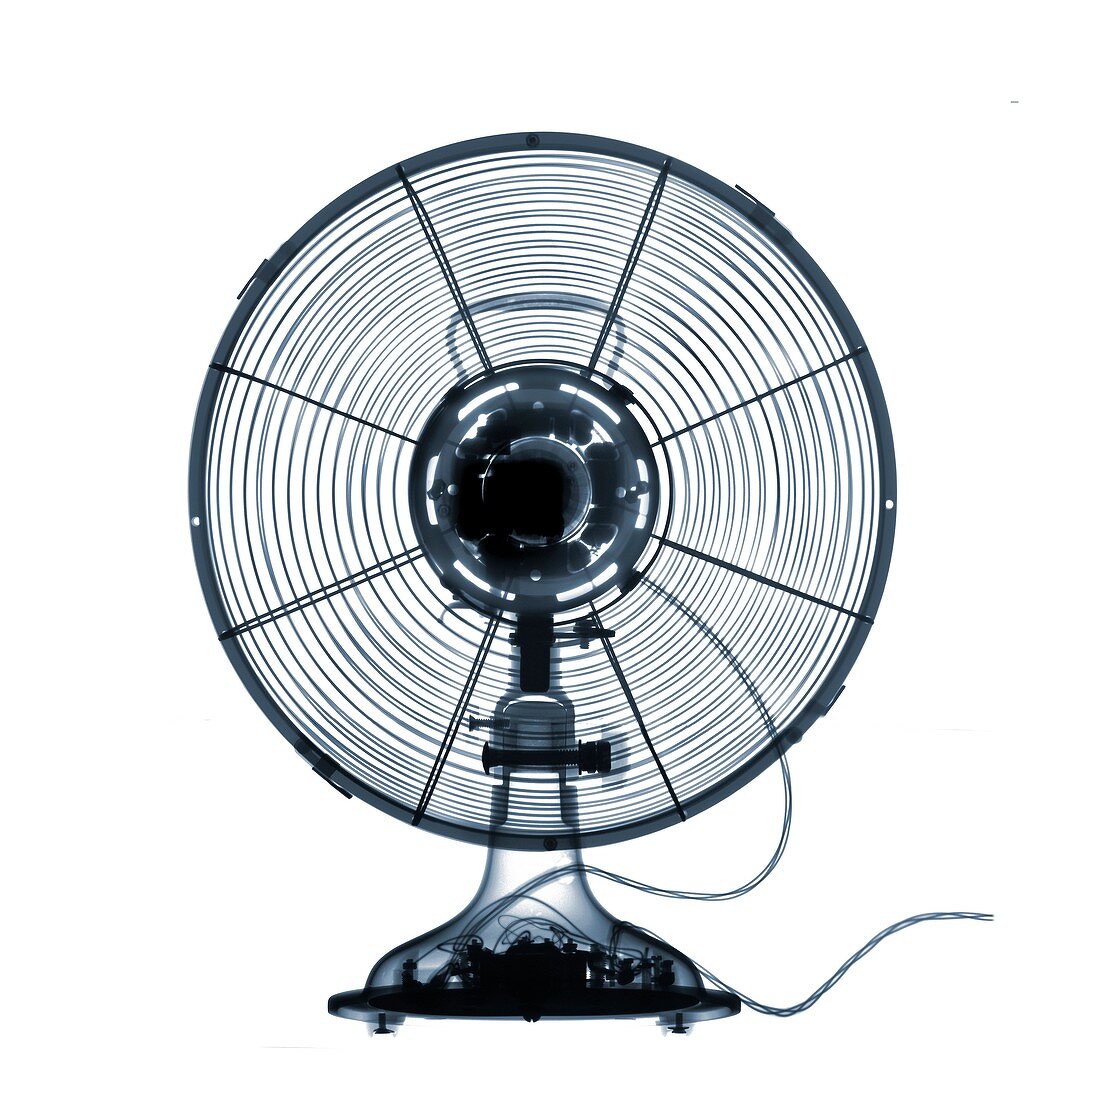 Electrical fan, X-ray